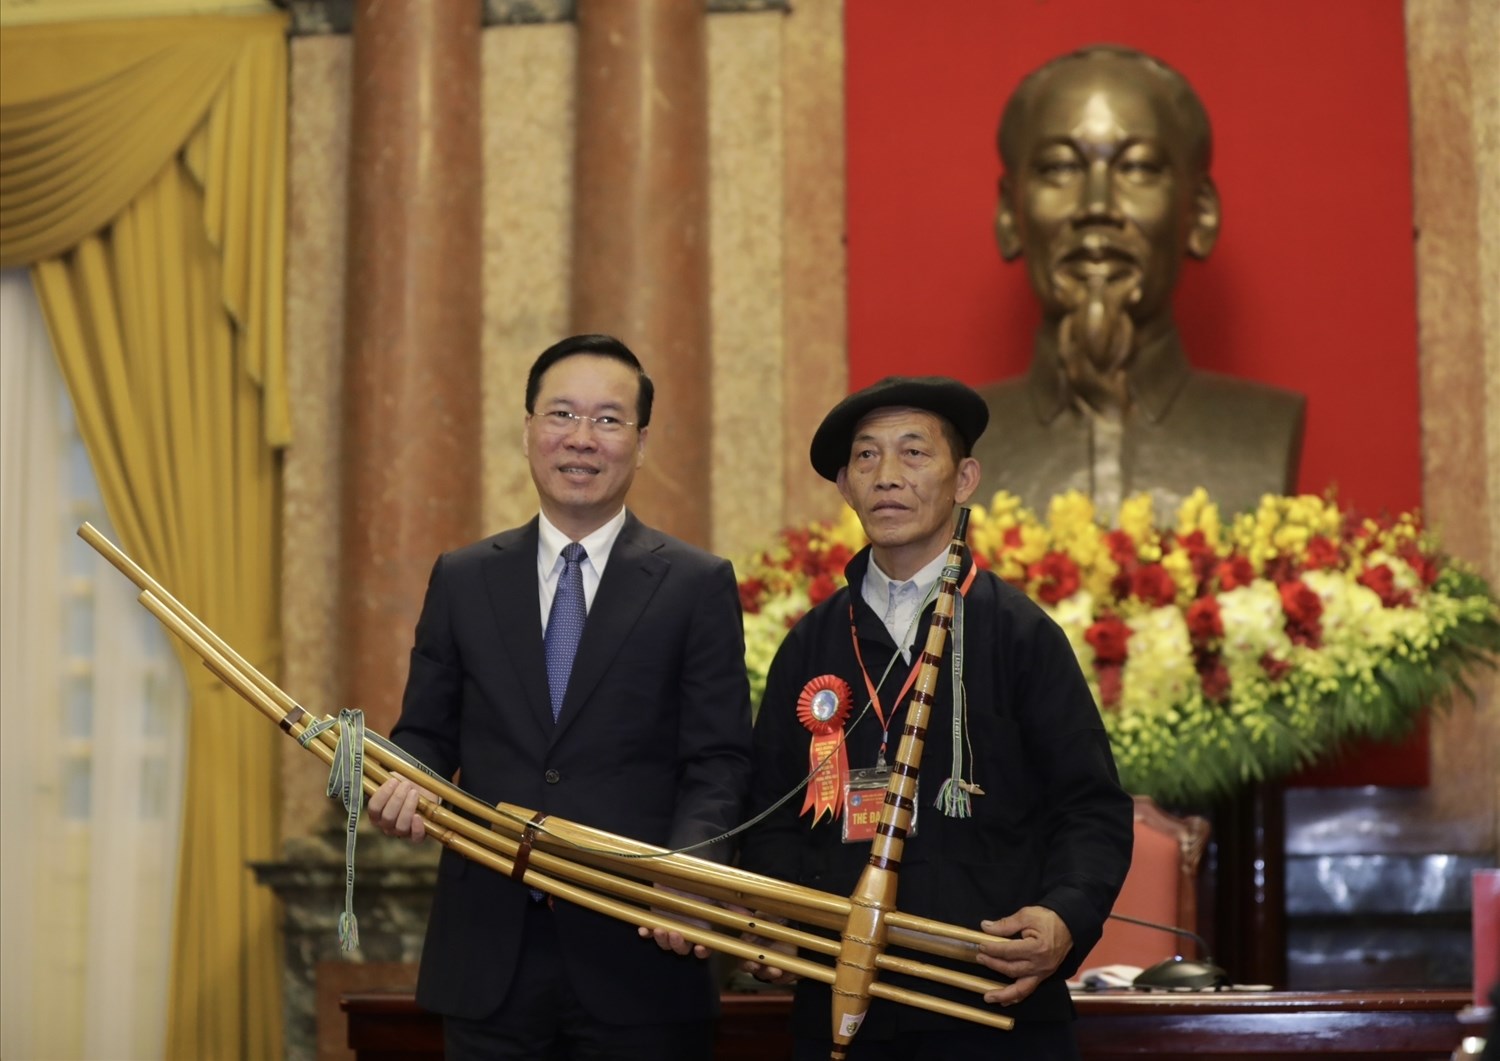 Đại diện Người có uy tín thay mặt Đoàn đại biểu tặng Chủ tịch nước Võ Văn Thưởng chiếc khèn của dân tộc Mông